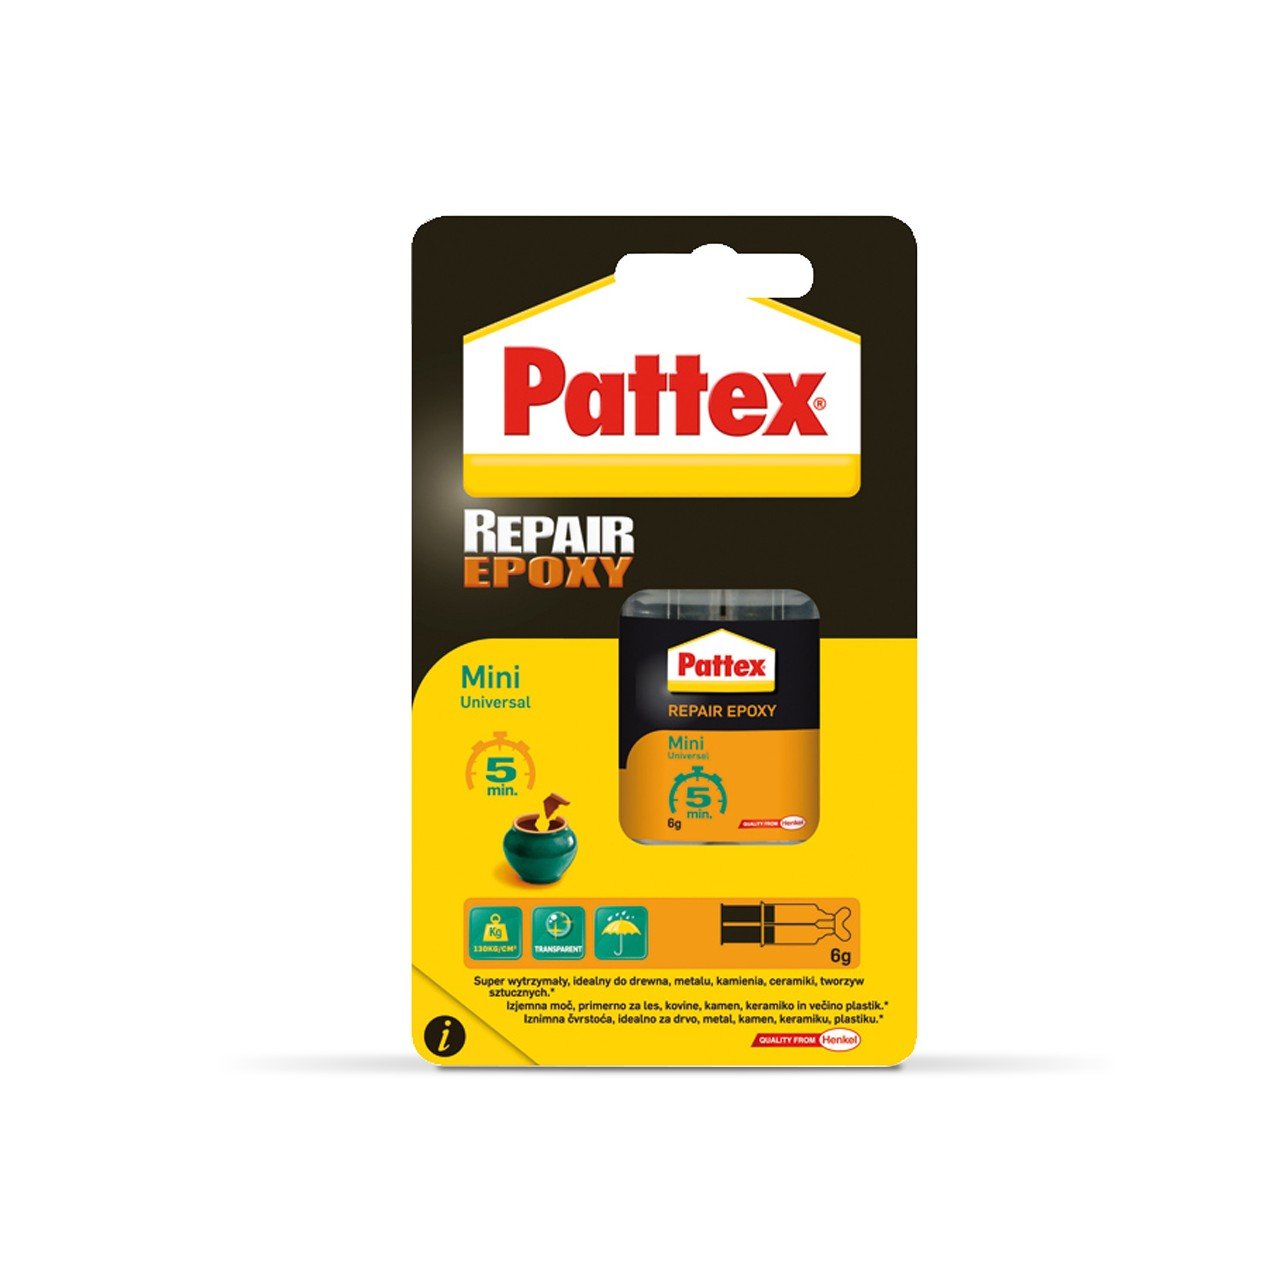 Pattex Repair Epoxy Mini Universel 5 min 6g